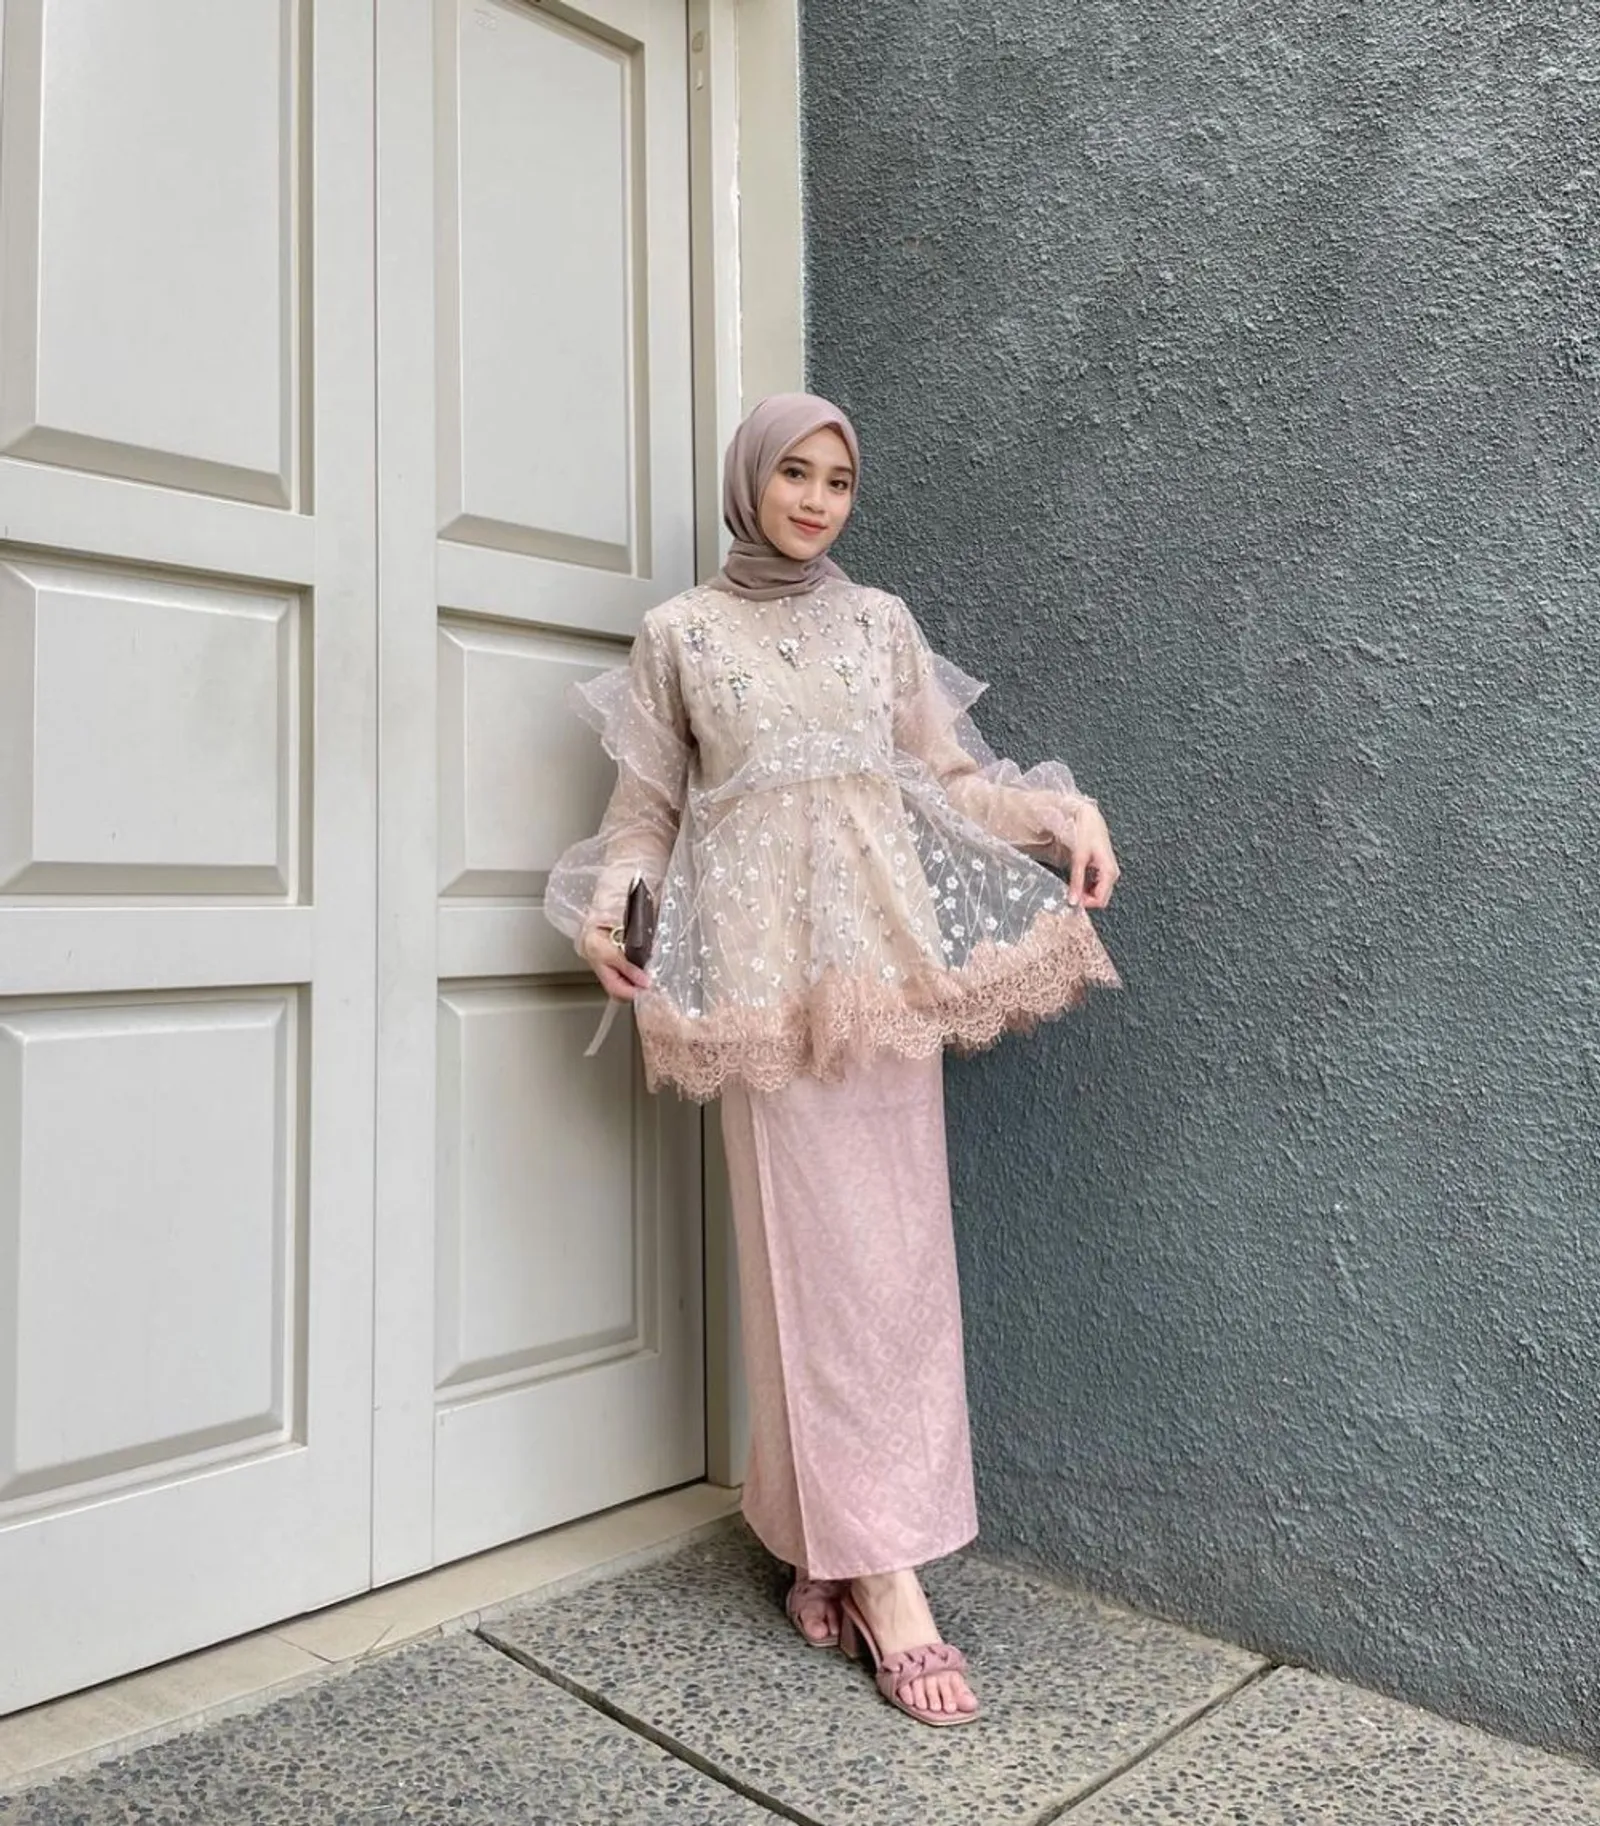 Inspirasi Model Kebaya Muslim untuk Hadiri Pesta Pernikahan